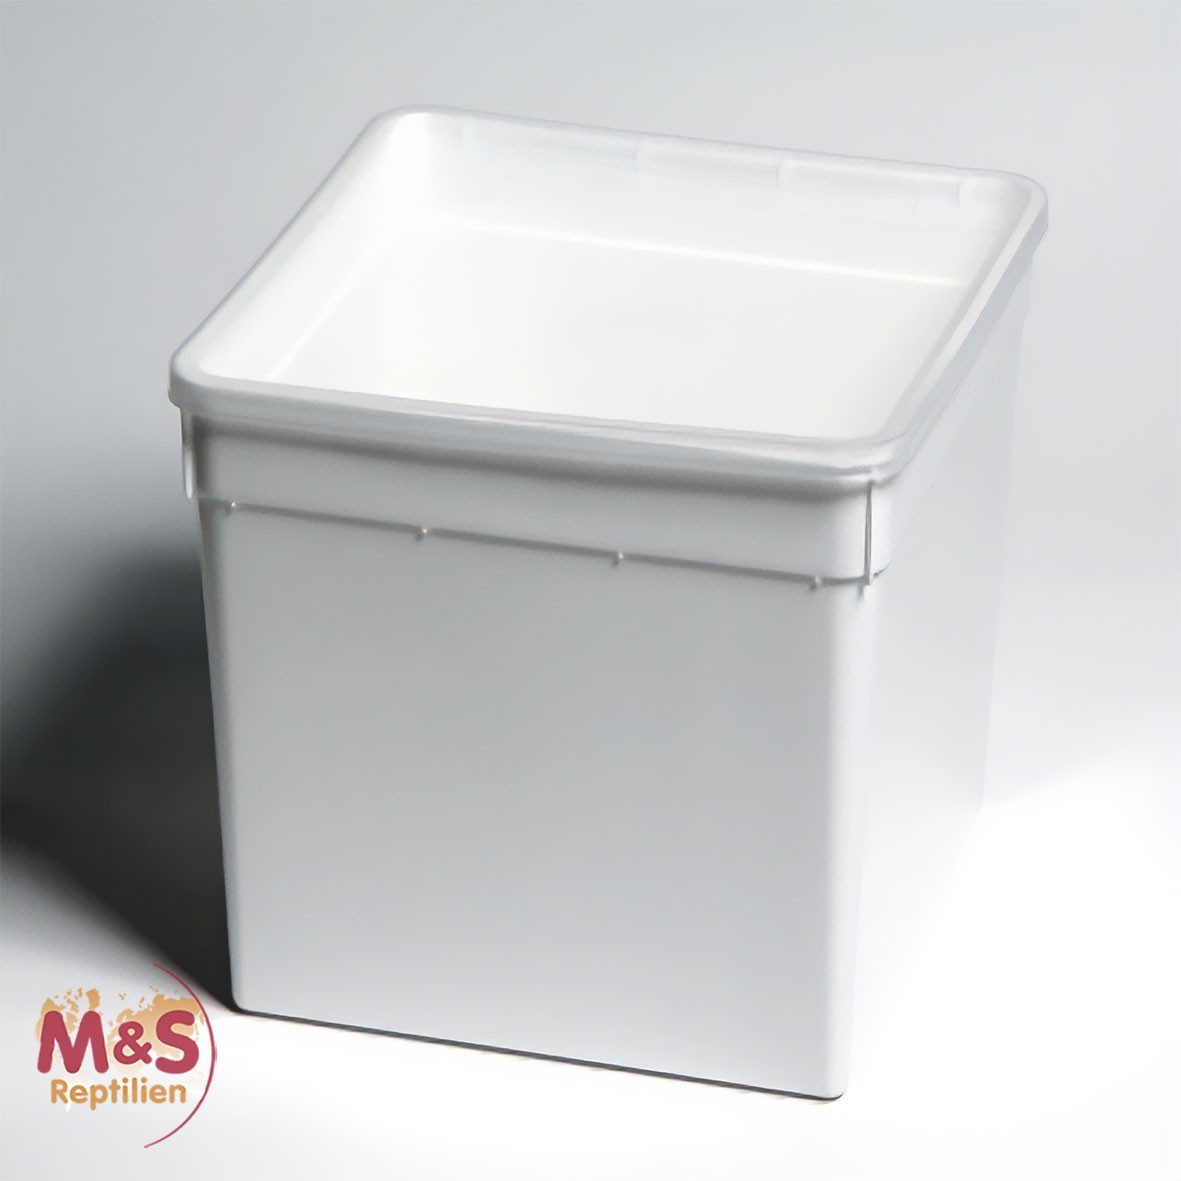 M&S Reptilien Terrarium Kunststoffbox weiß, hoch (18,5x18,5x19 cm) Deckel transparent